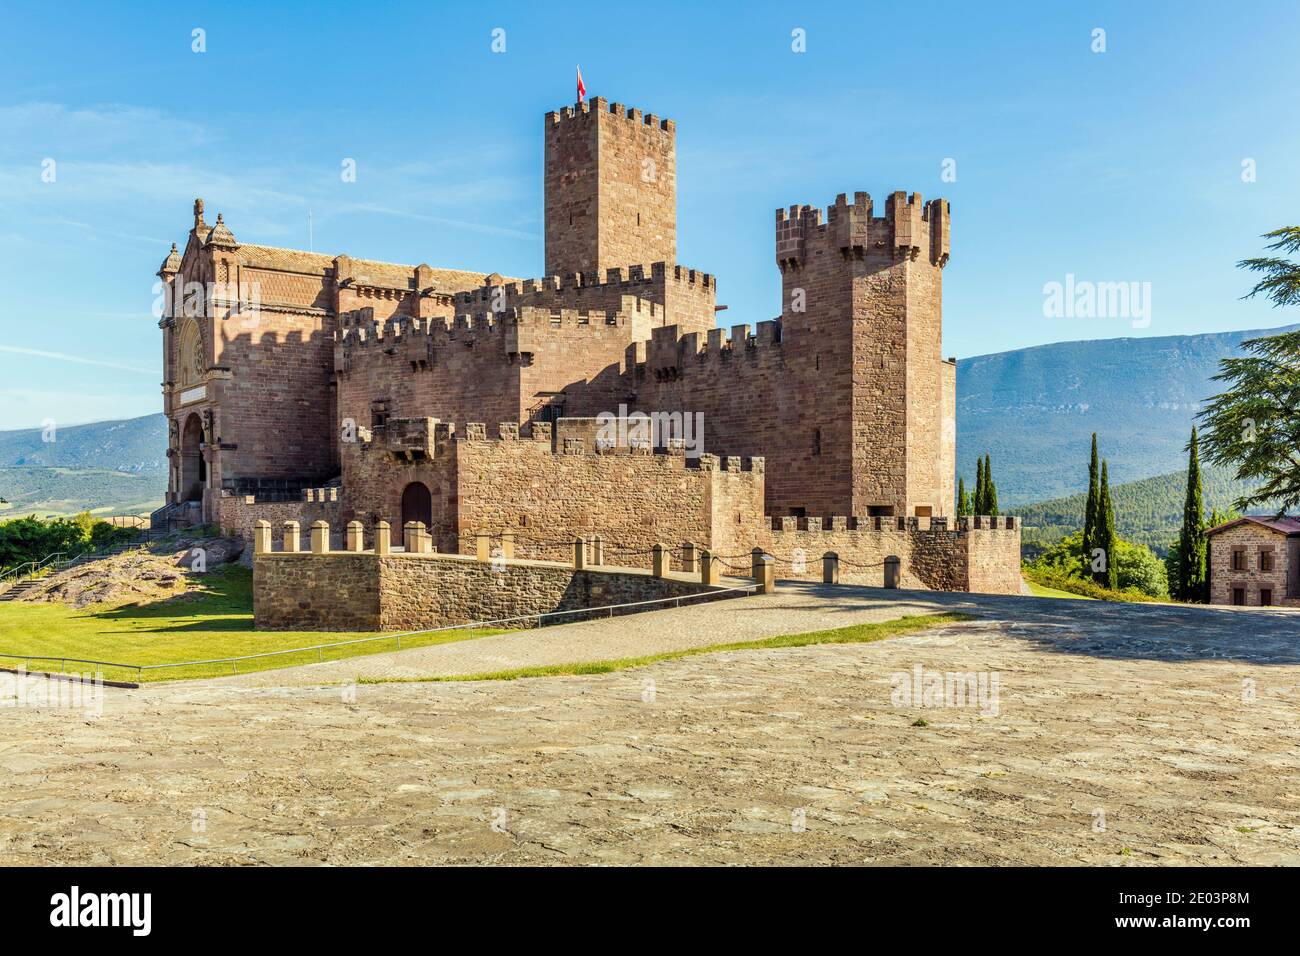 Castillo de Javier oder Schloss Xavier, Javier, Navarra, Spanien. Geburtsort des spanischen katholischen Priesters und Missionars Franz Xaver im Jahre 1506. Stockfoto